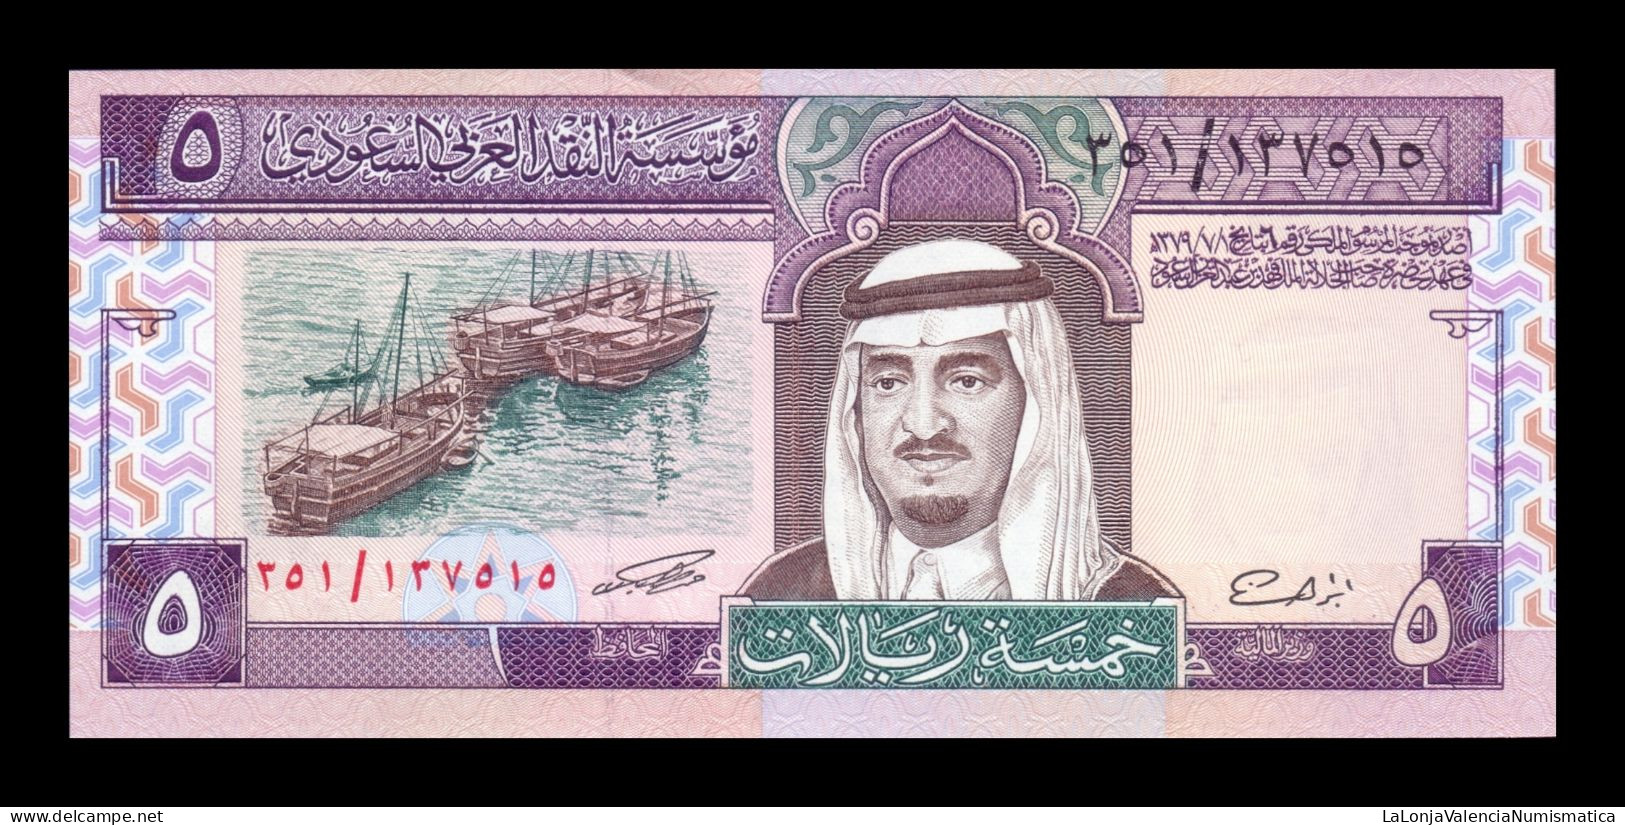 Arabia Saudí 5 Riyals 1983 Pick 22d Sc Unc - Saudi Arabia